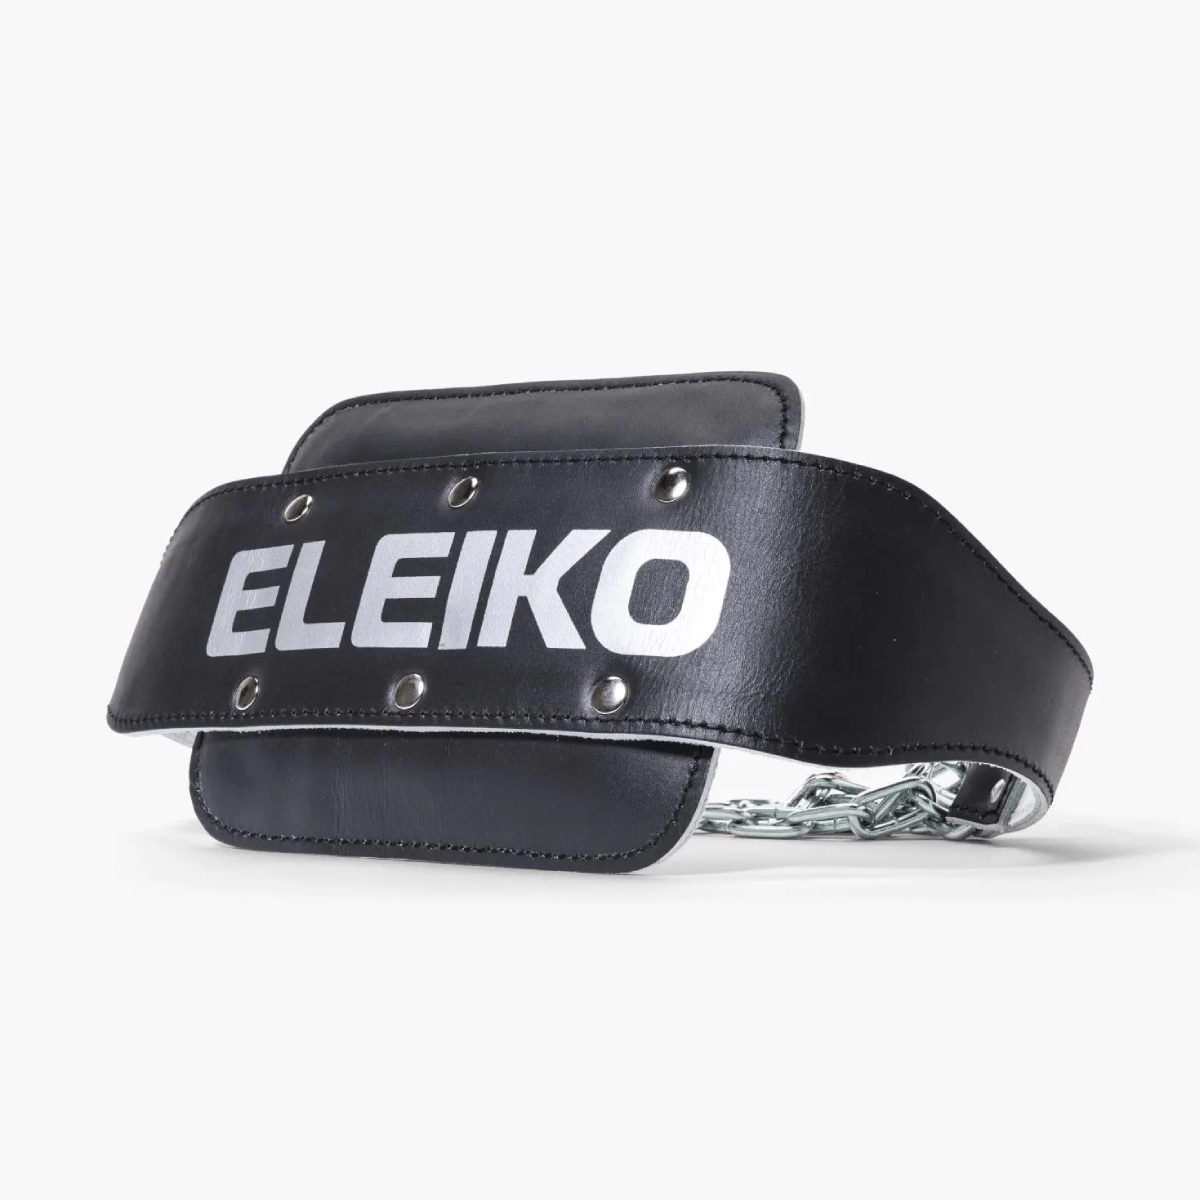 Eleiko Dip Belt with Chain